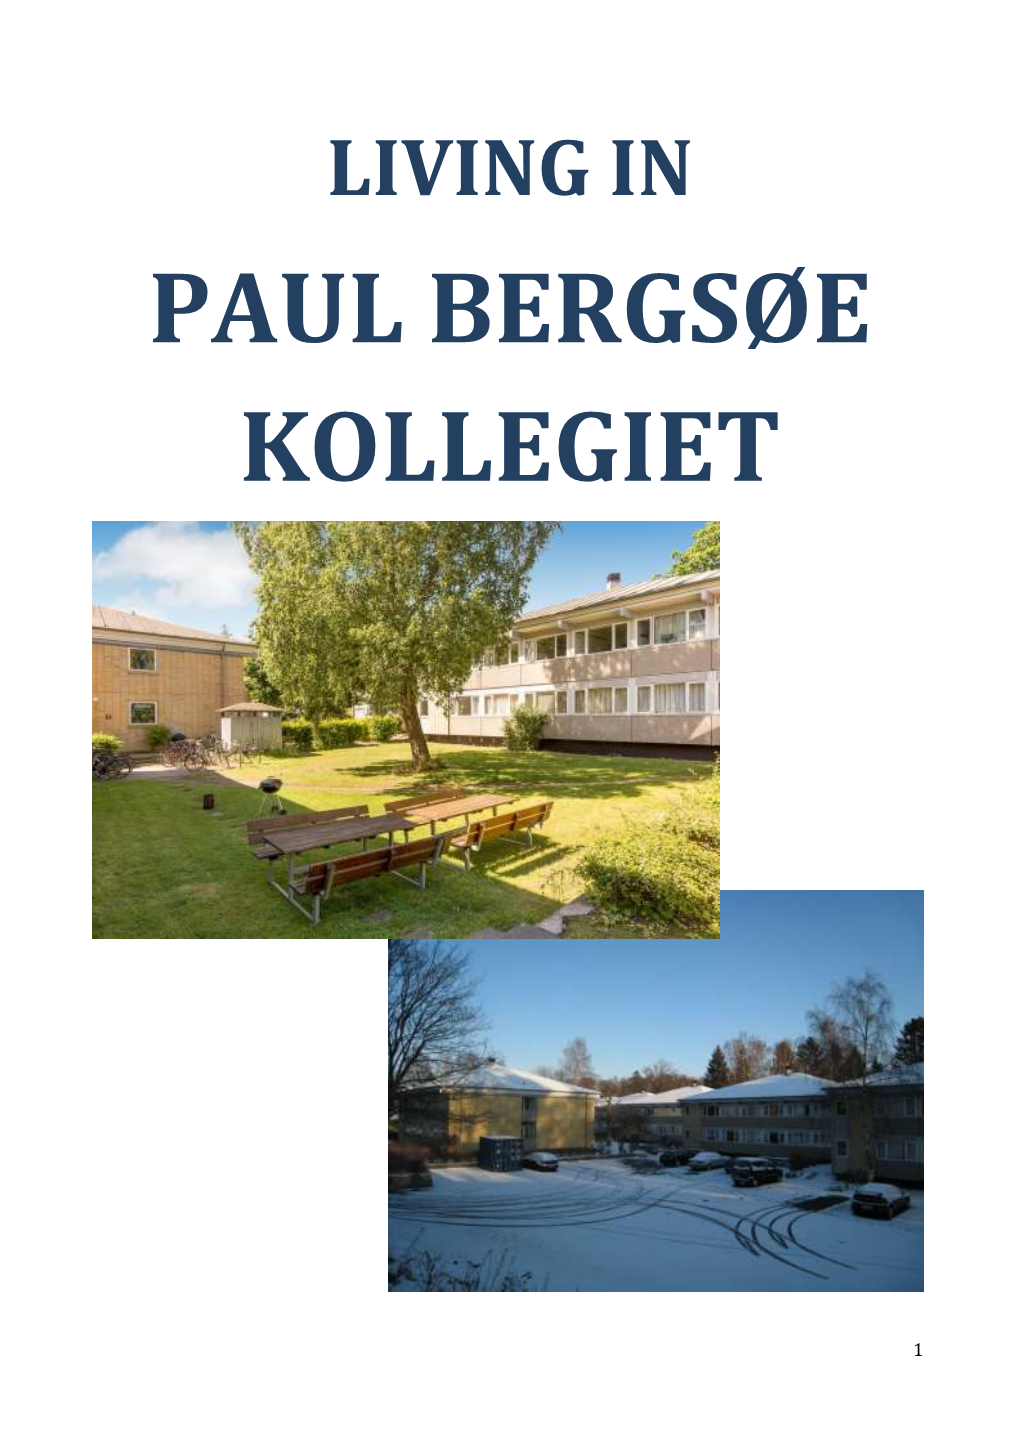 Paul Bergsøe Kollegiet